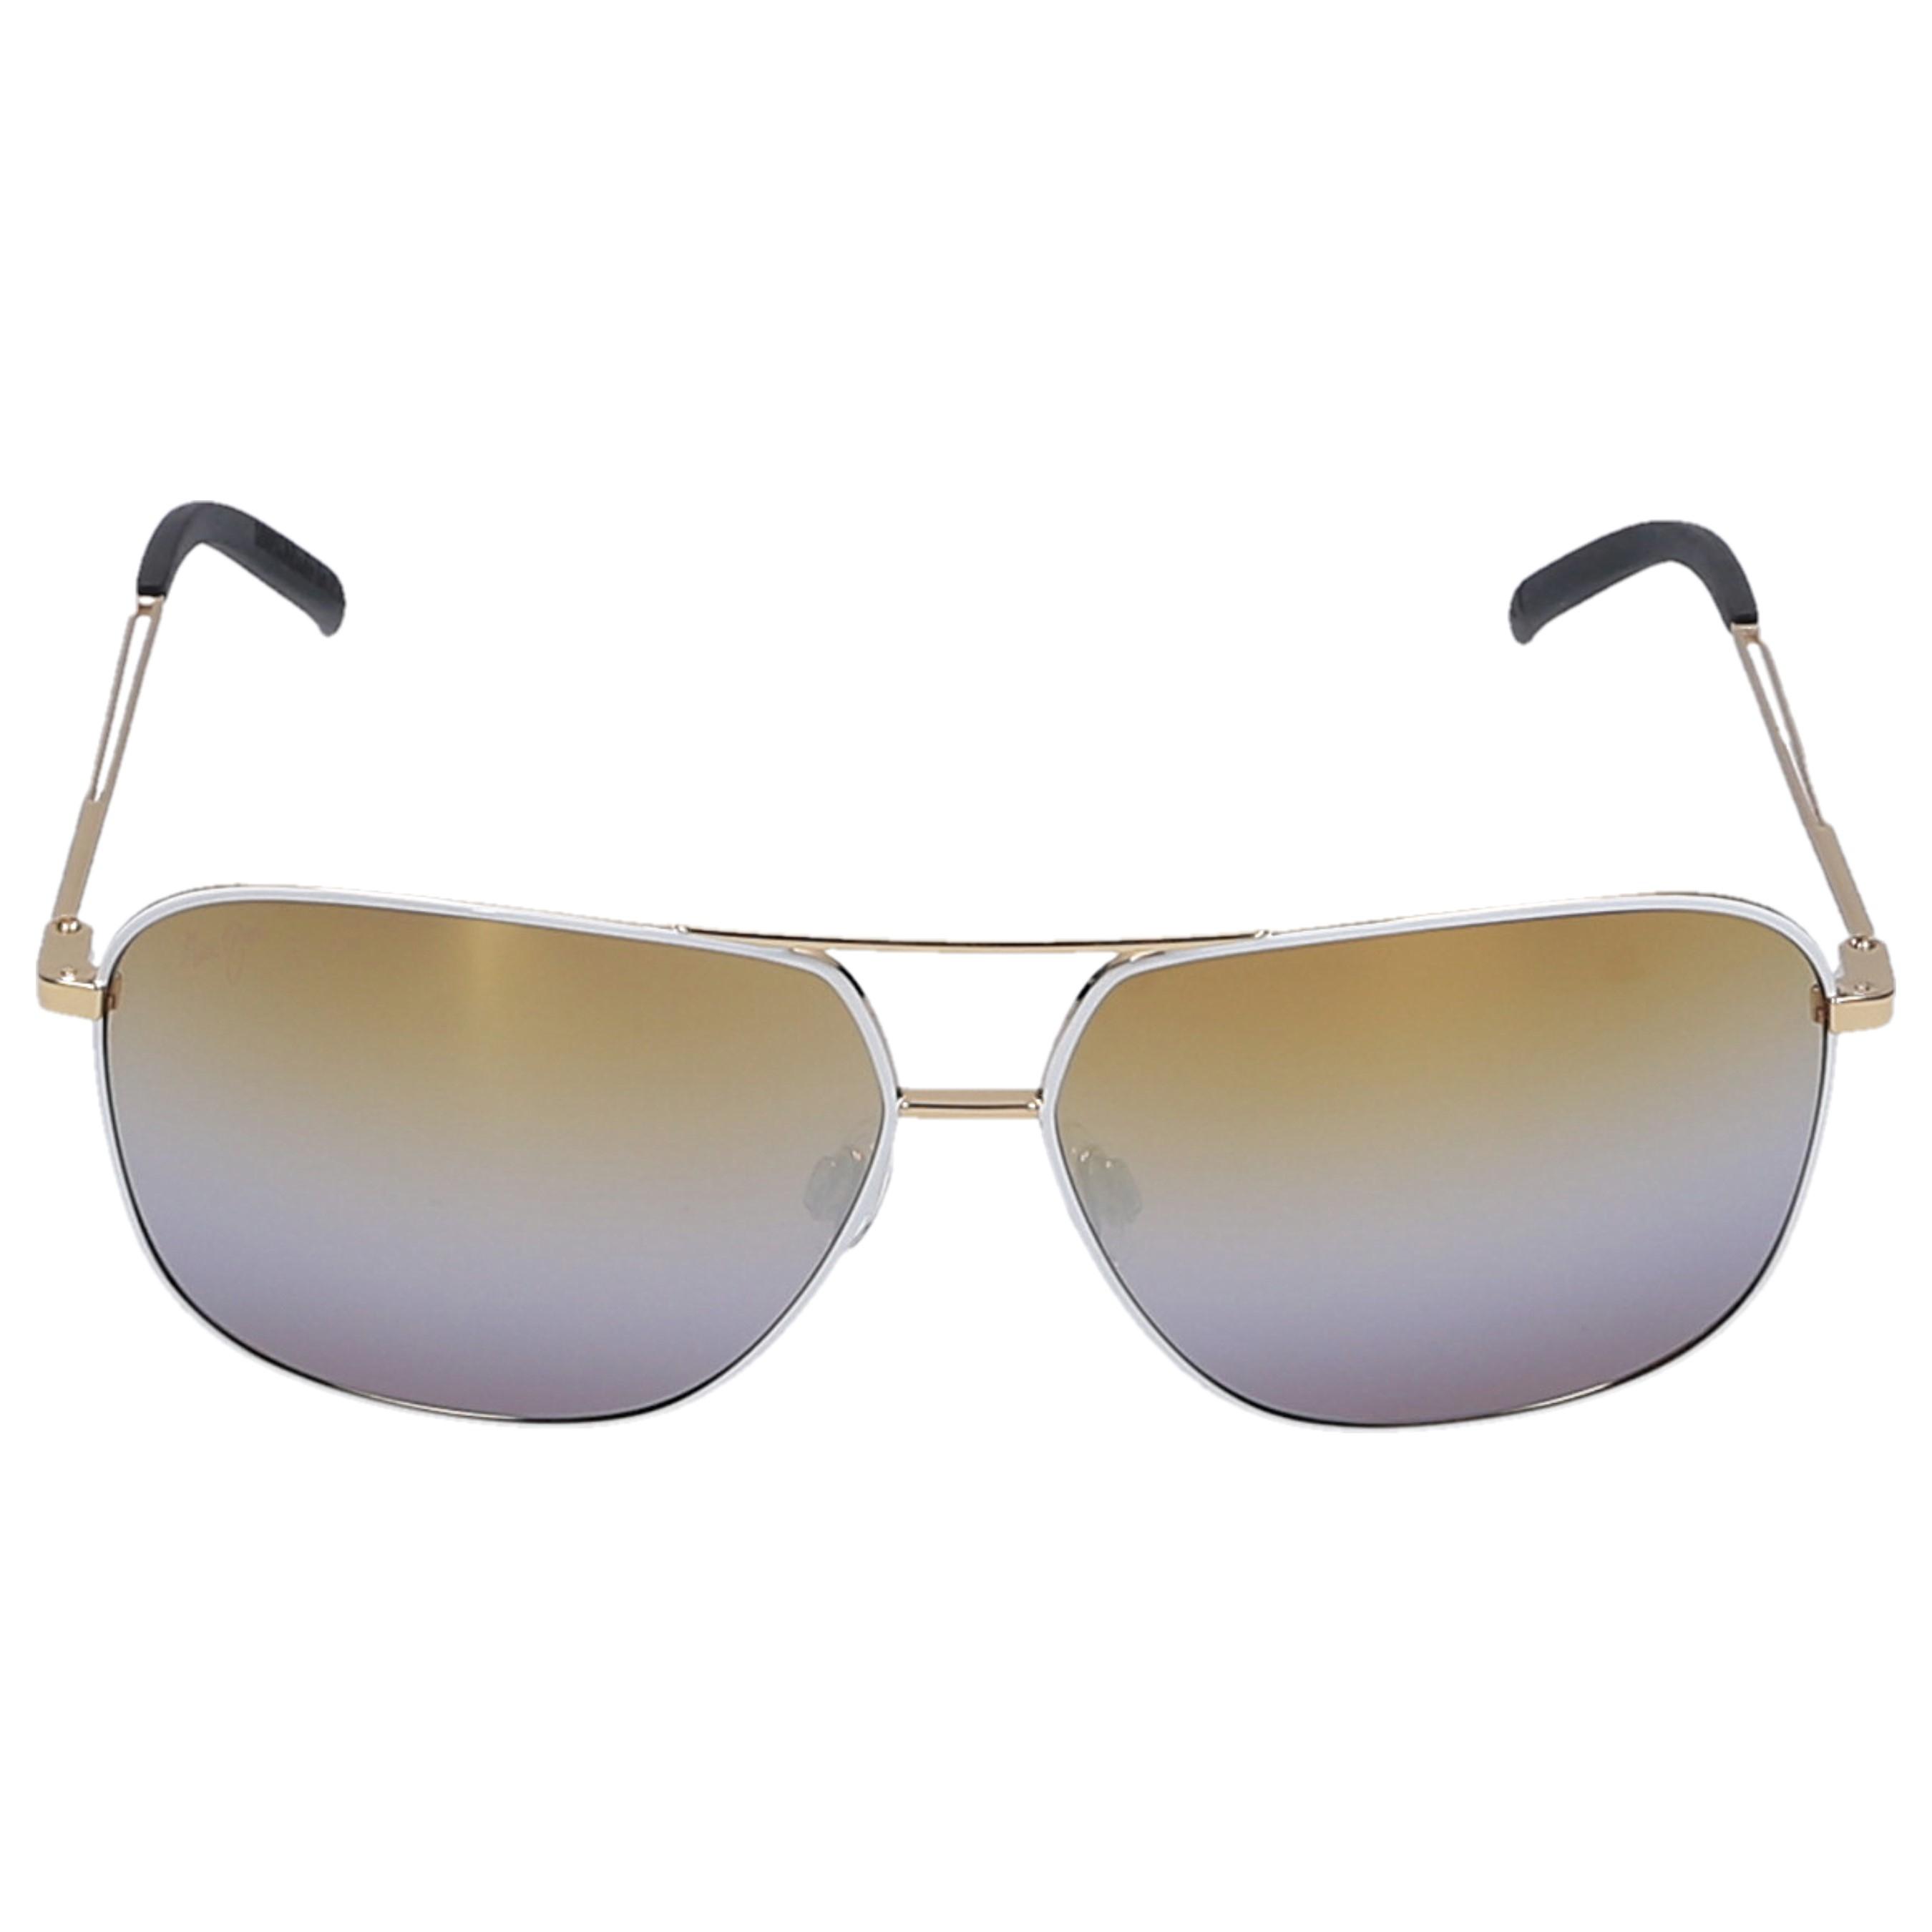 Maui Jim Sunglasses Aviator Kami 05c Metall Gold in Metallic for Men - Lyst